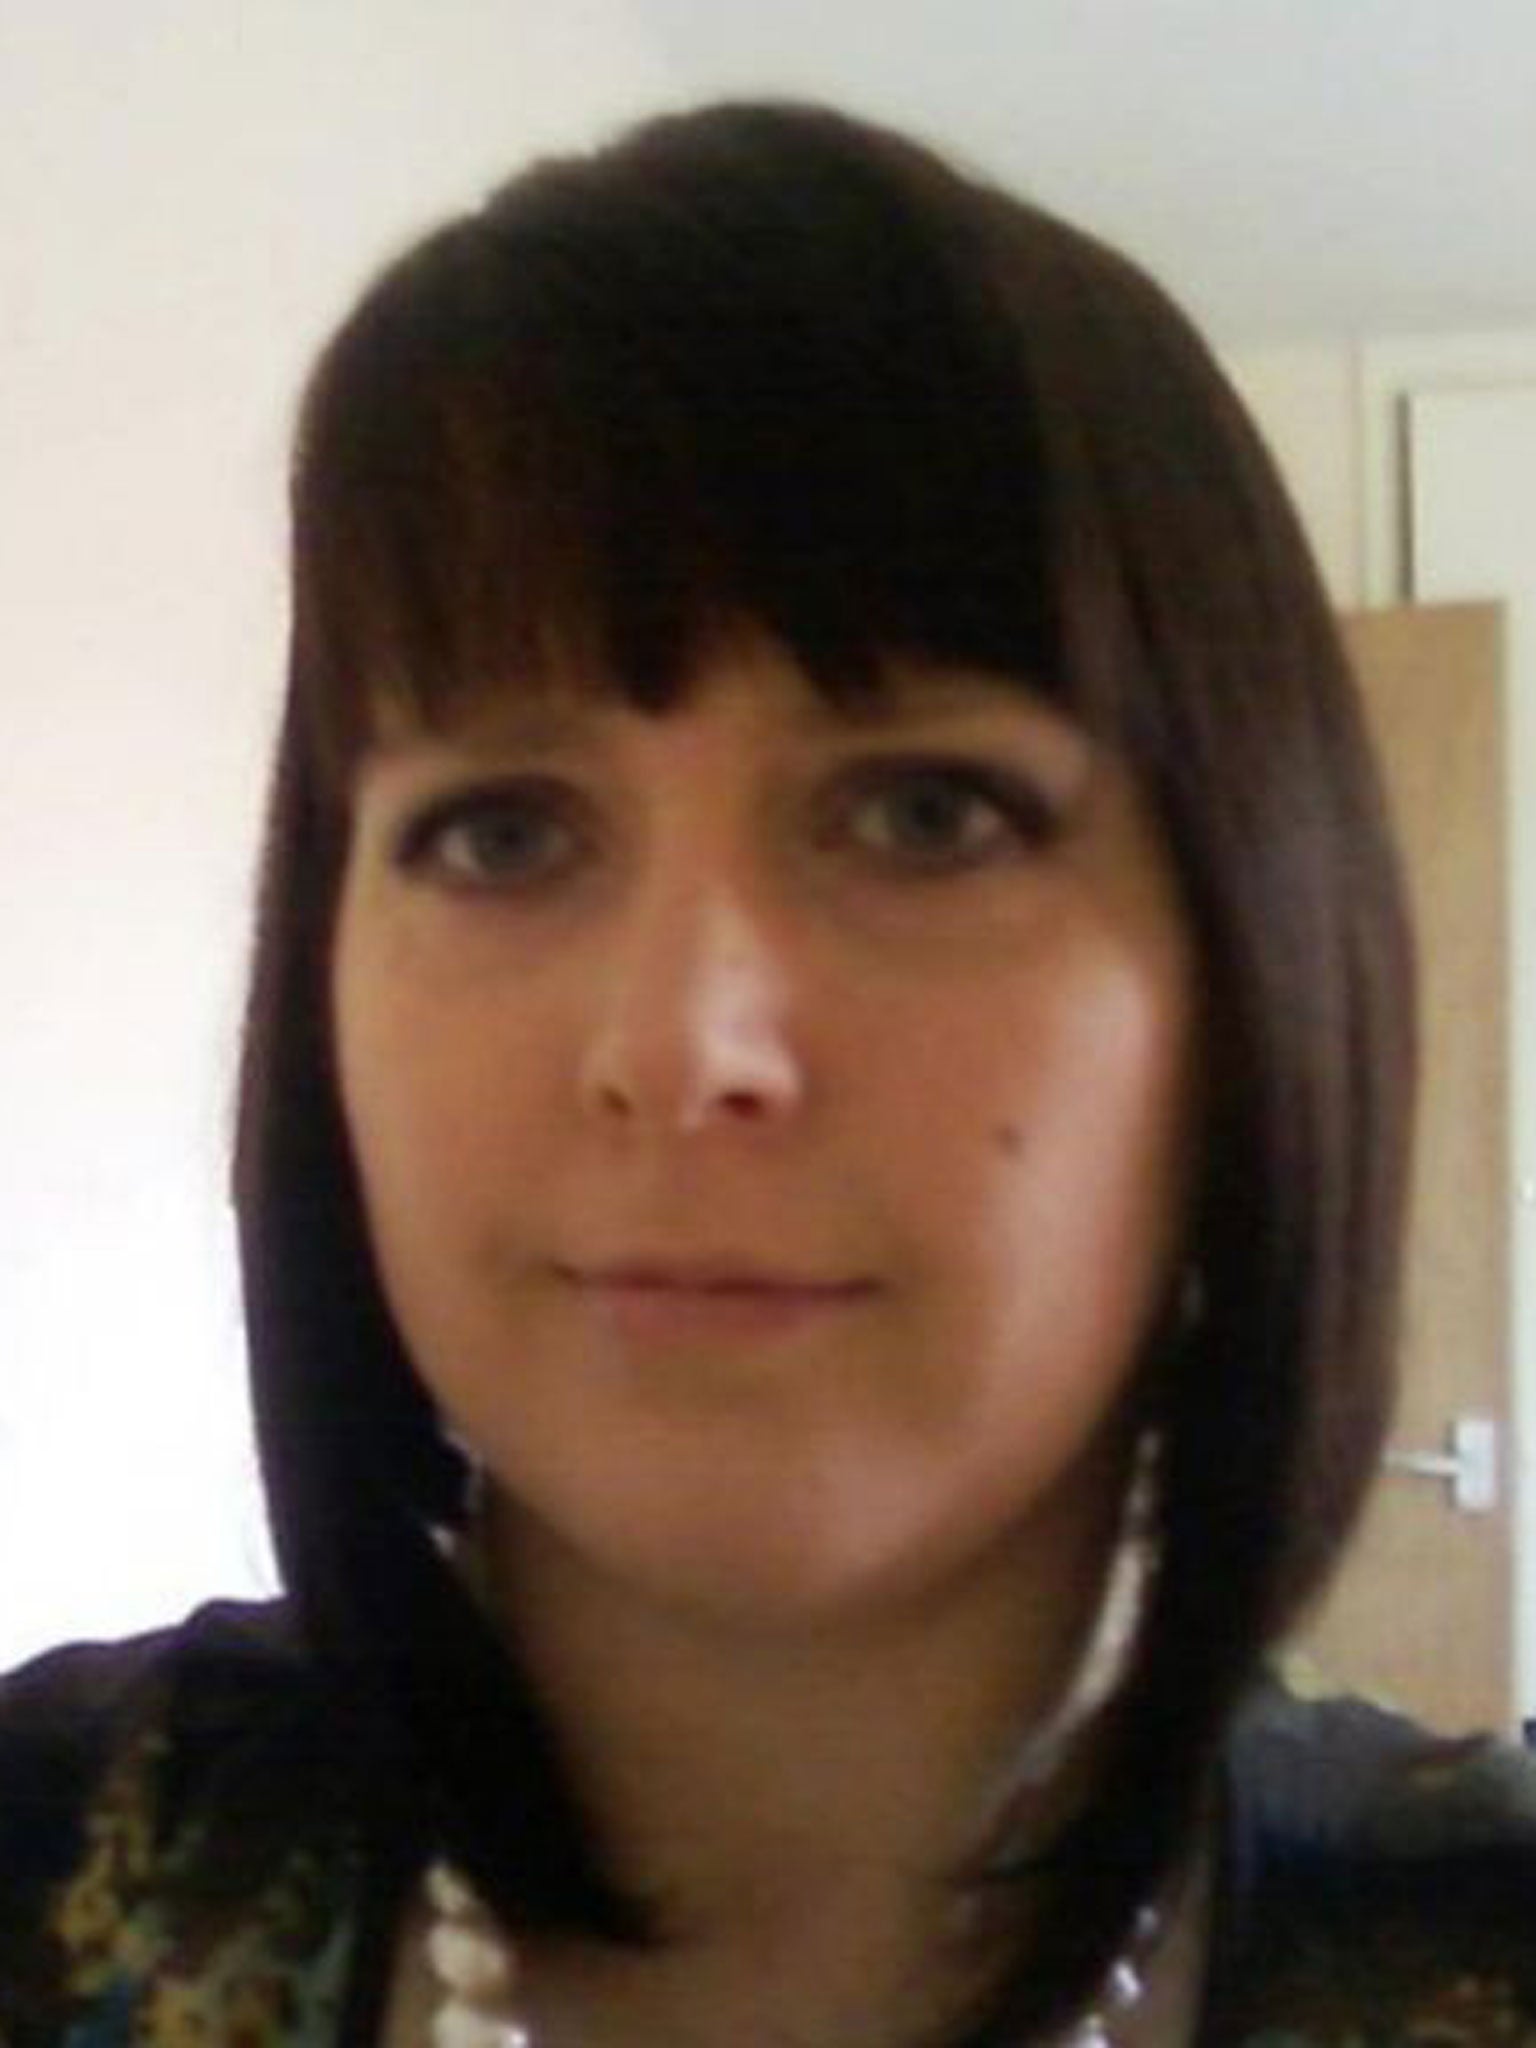 36-year-old Clare Wood was murdered by her ex-boyfriend George Appleton